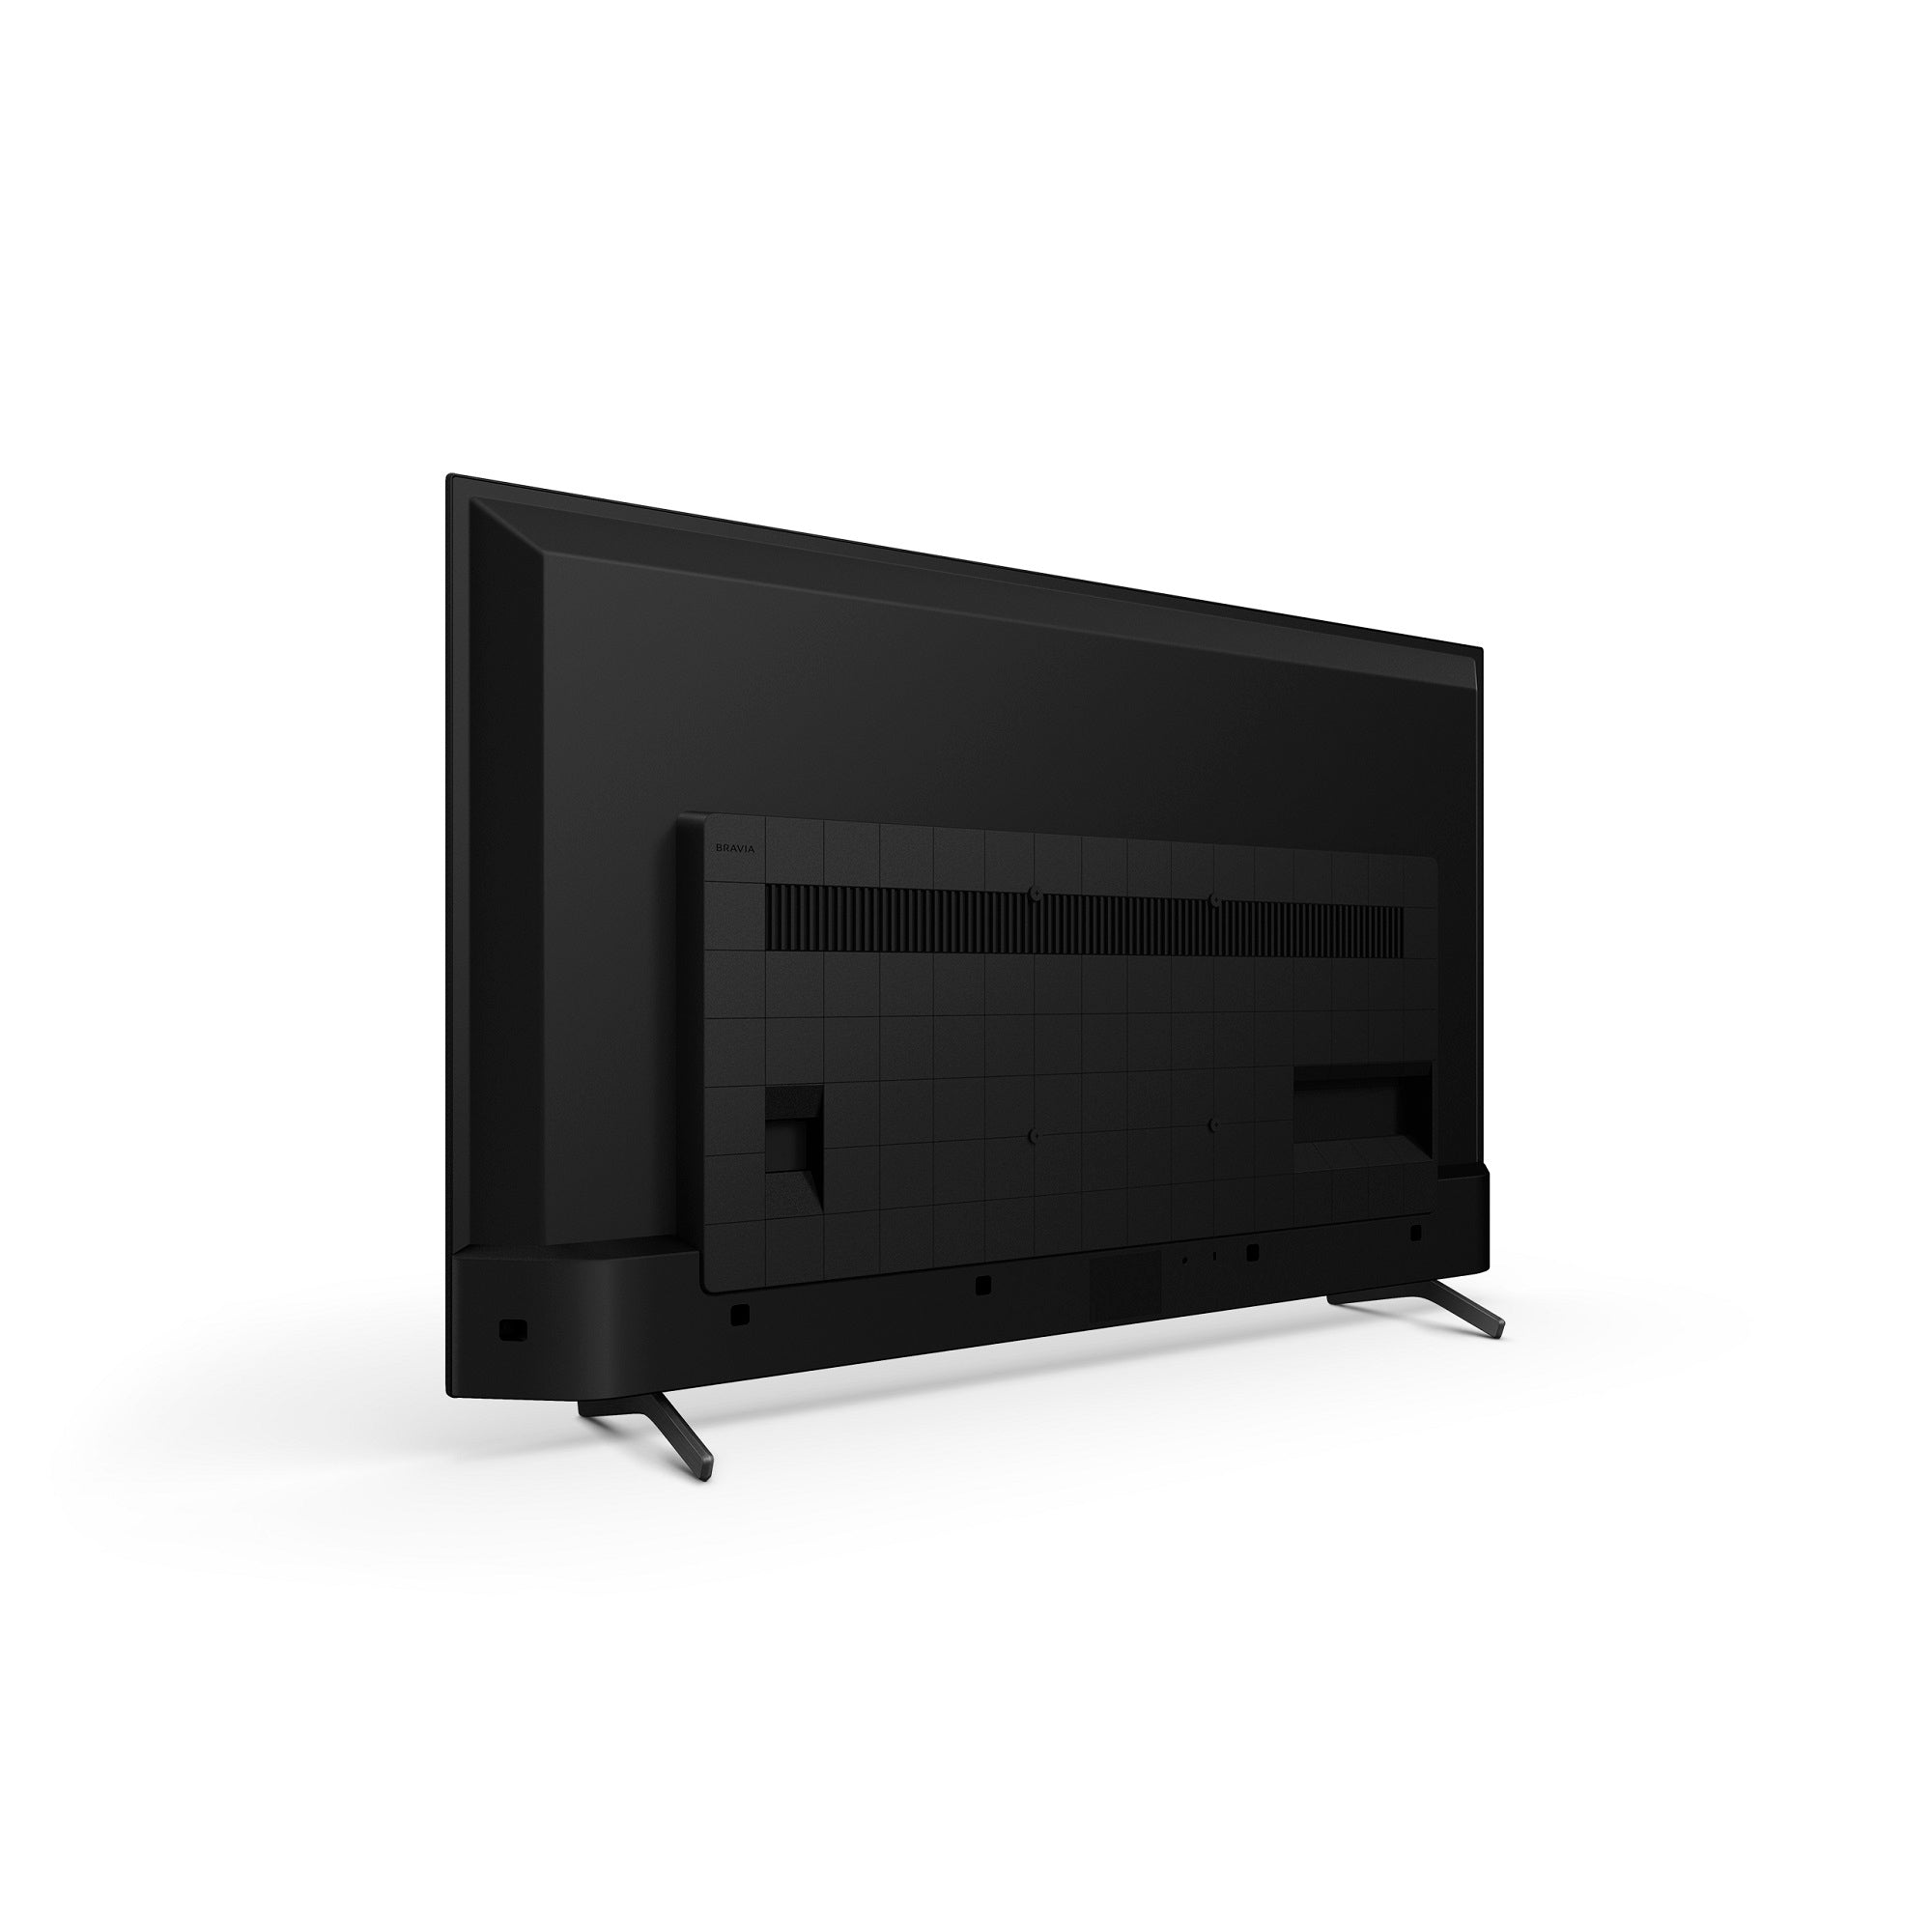 טלוויזיה 50 אינץ X72K | ‏4K Ultra HD | HDR | Android TV